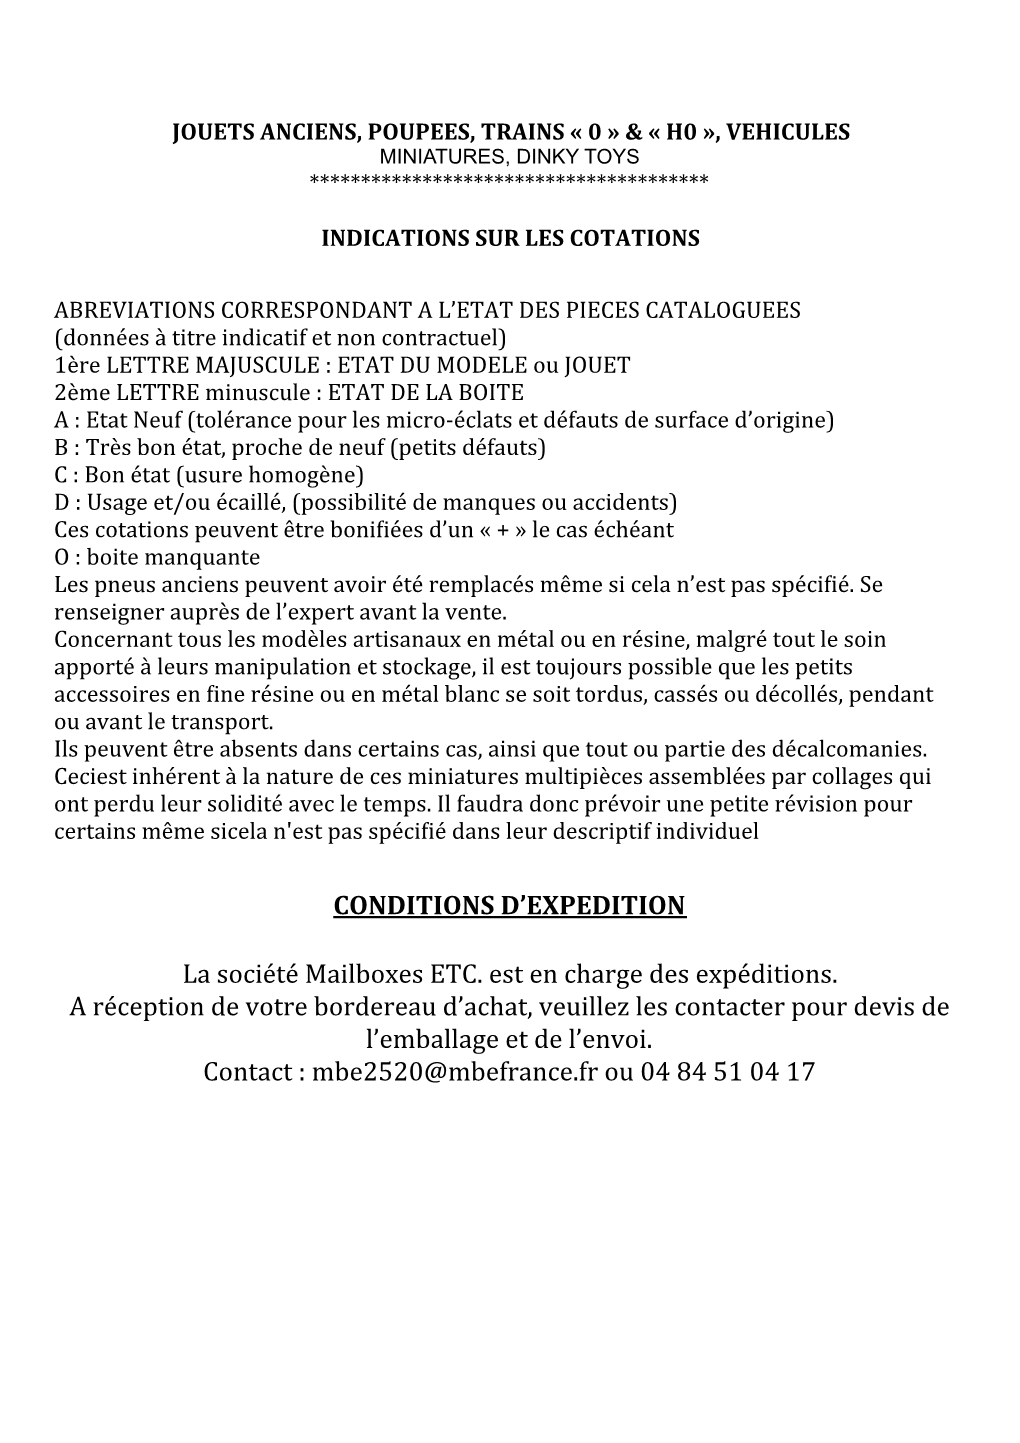 CONDITIONS D'expedition La Société Mailboxes ETC. Est En